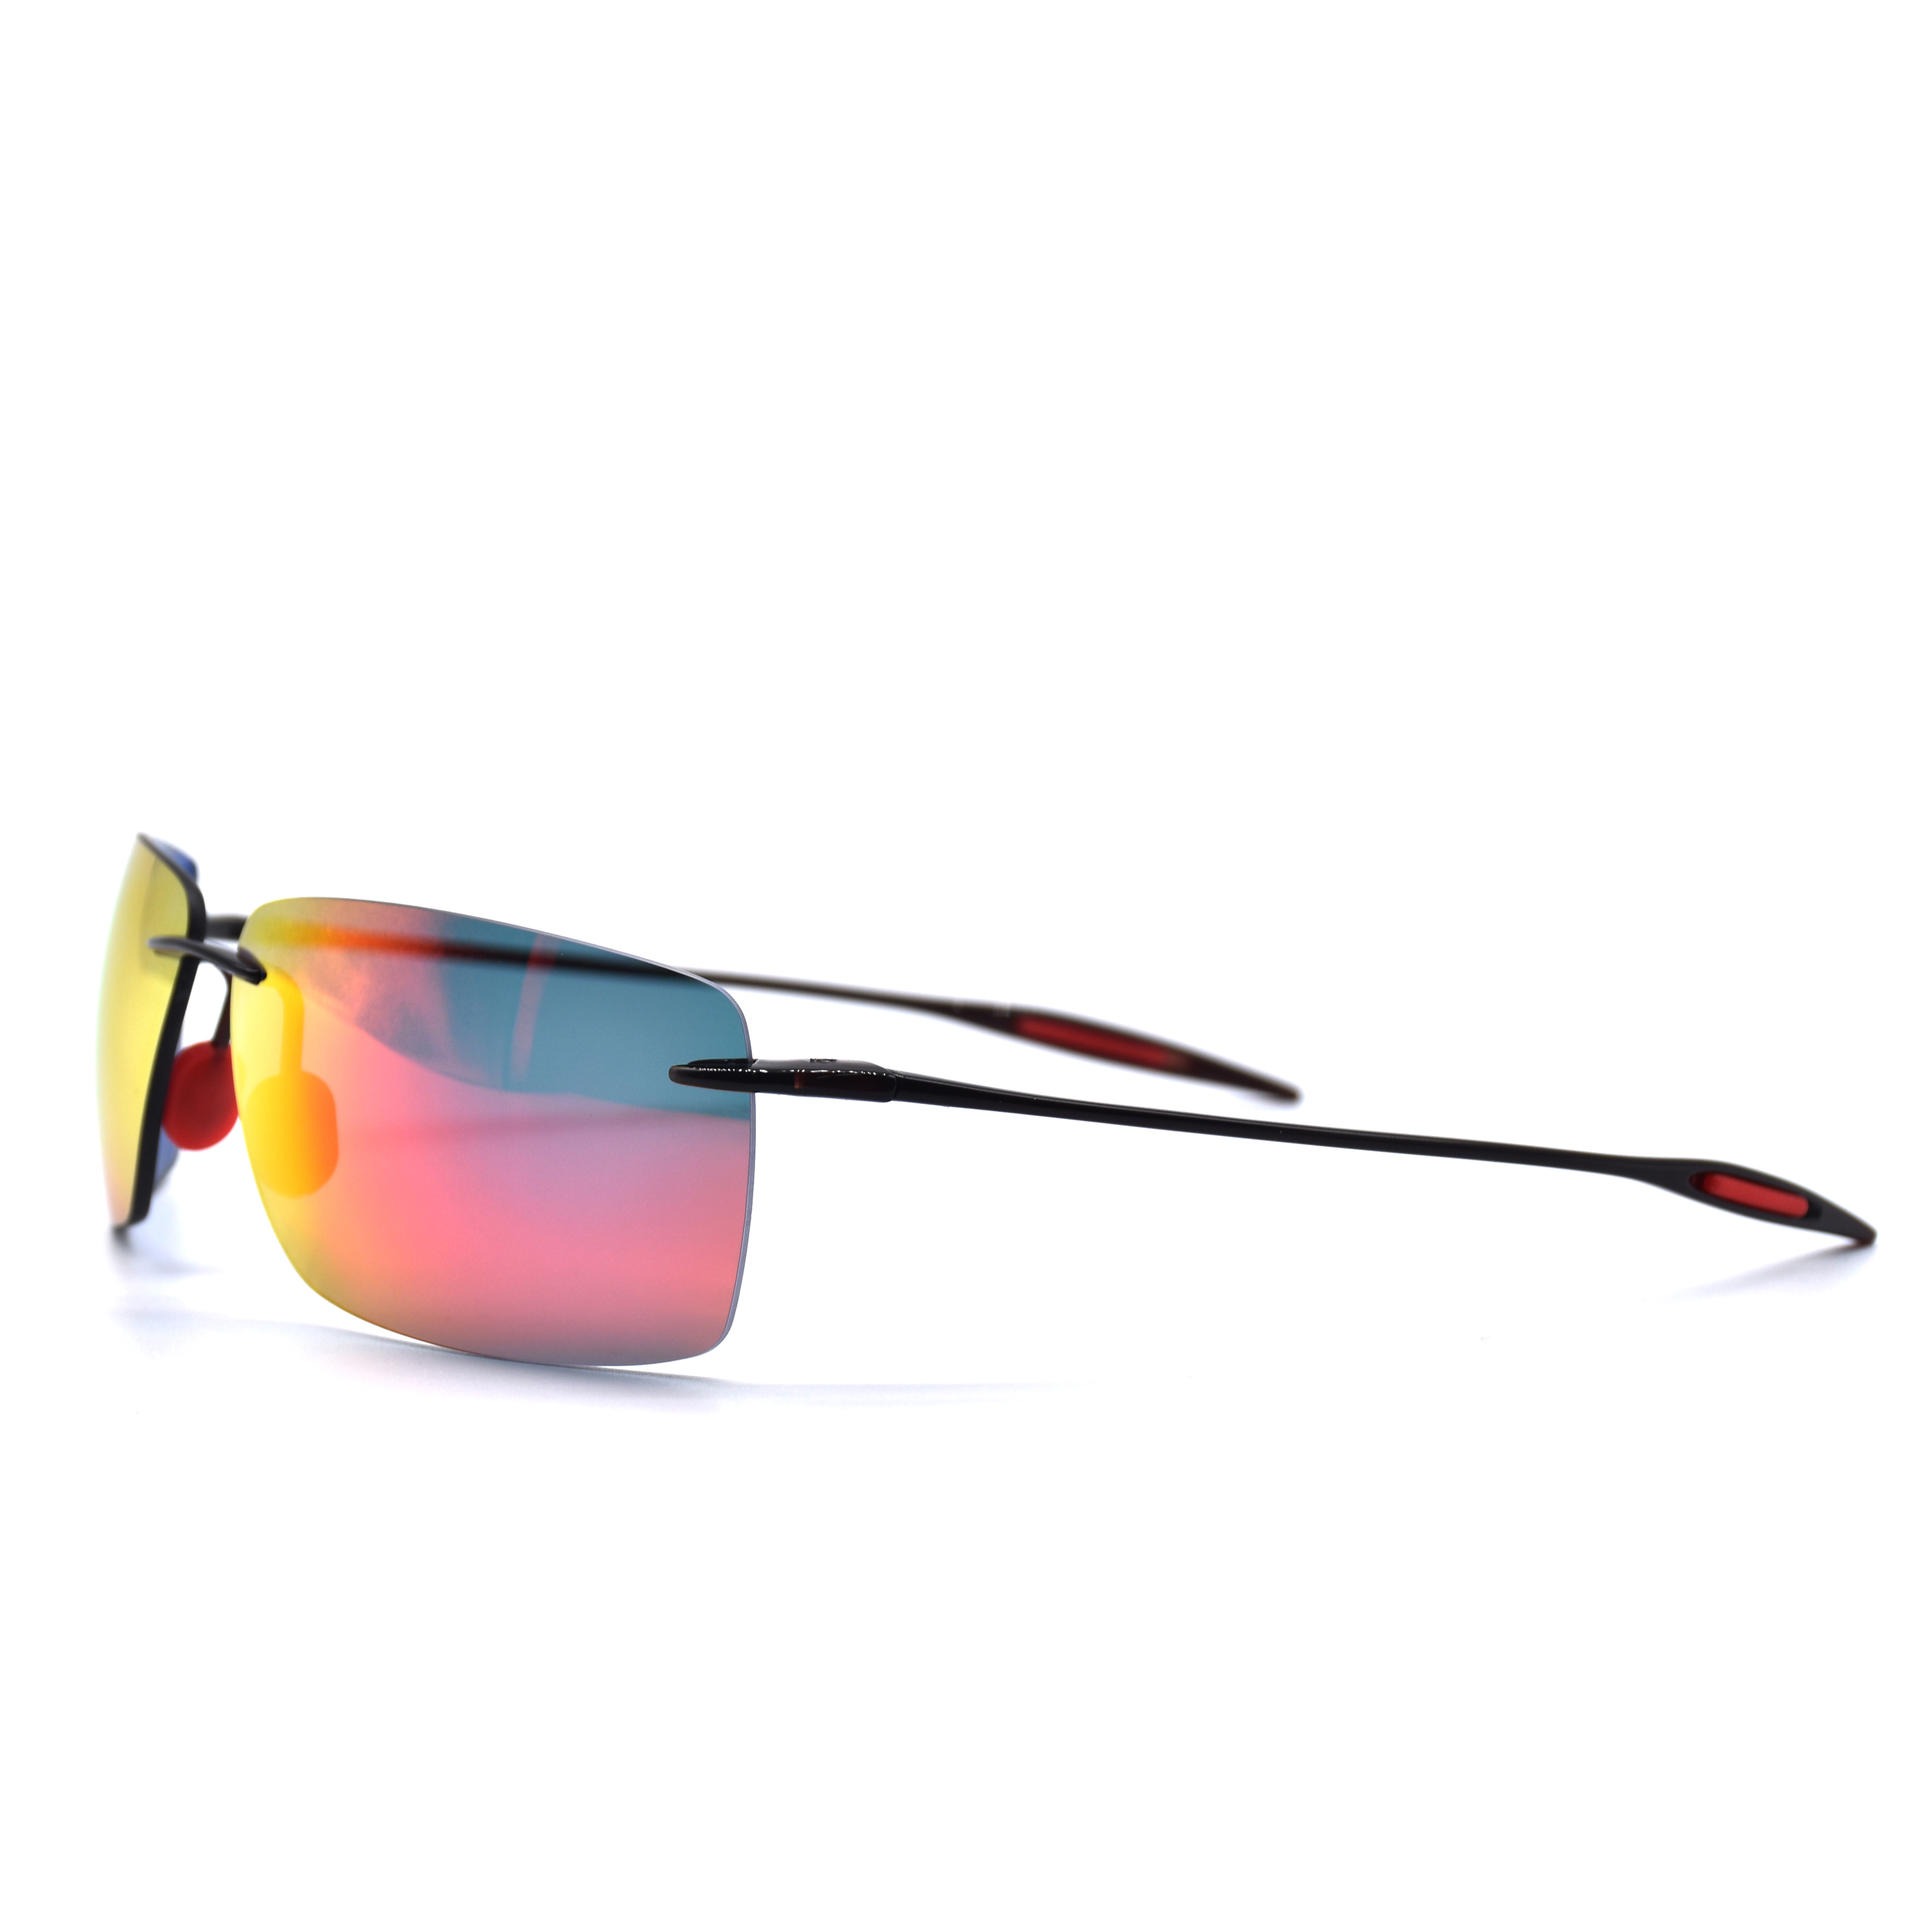 TR90超轻无框偏光太阳眼镜 休闲时尚太阳眼镜 骑行跑步防风眼镜7